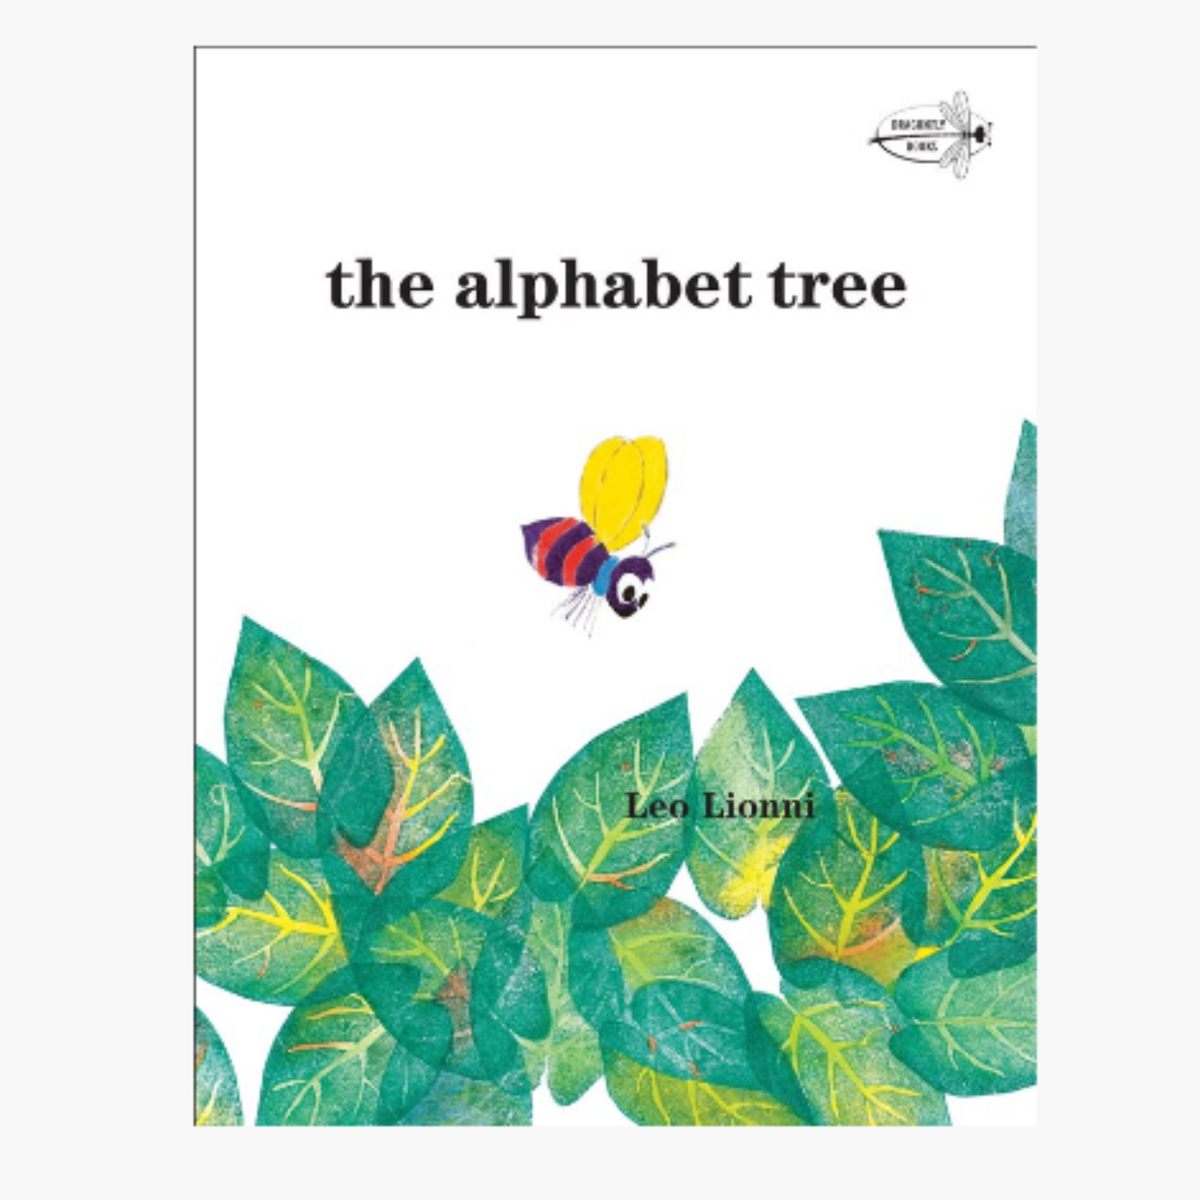 The Alphabet Tree